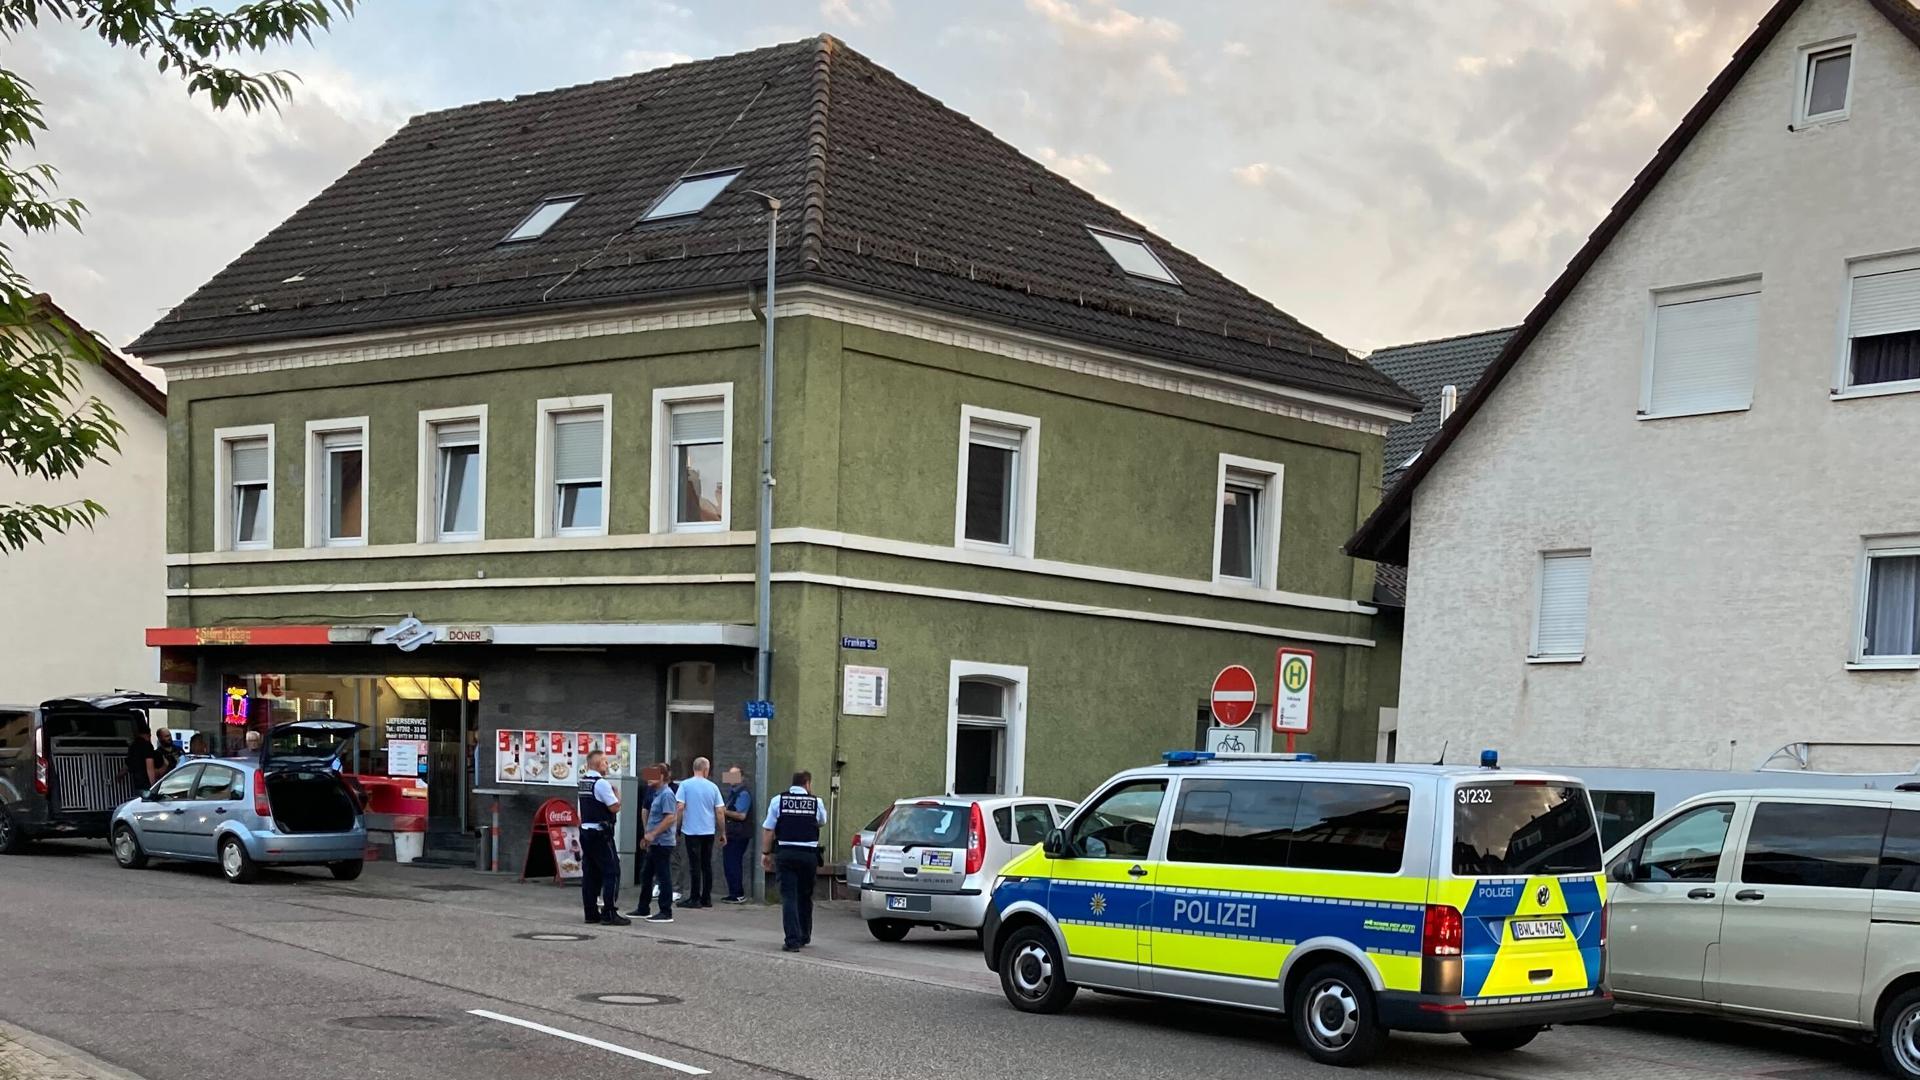 Aufsehenerregend war für Augenzeugen der Unfall in der Langensteinbacher Hauptstraße, in den zufällig ein Polizei-Hundeführer verwickelt war.